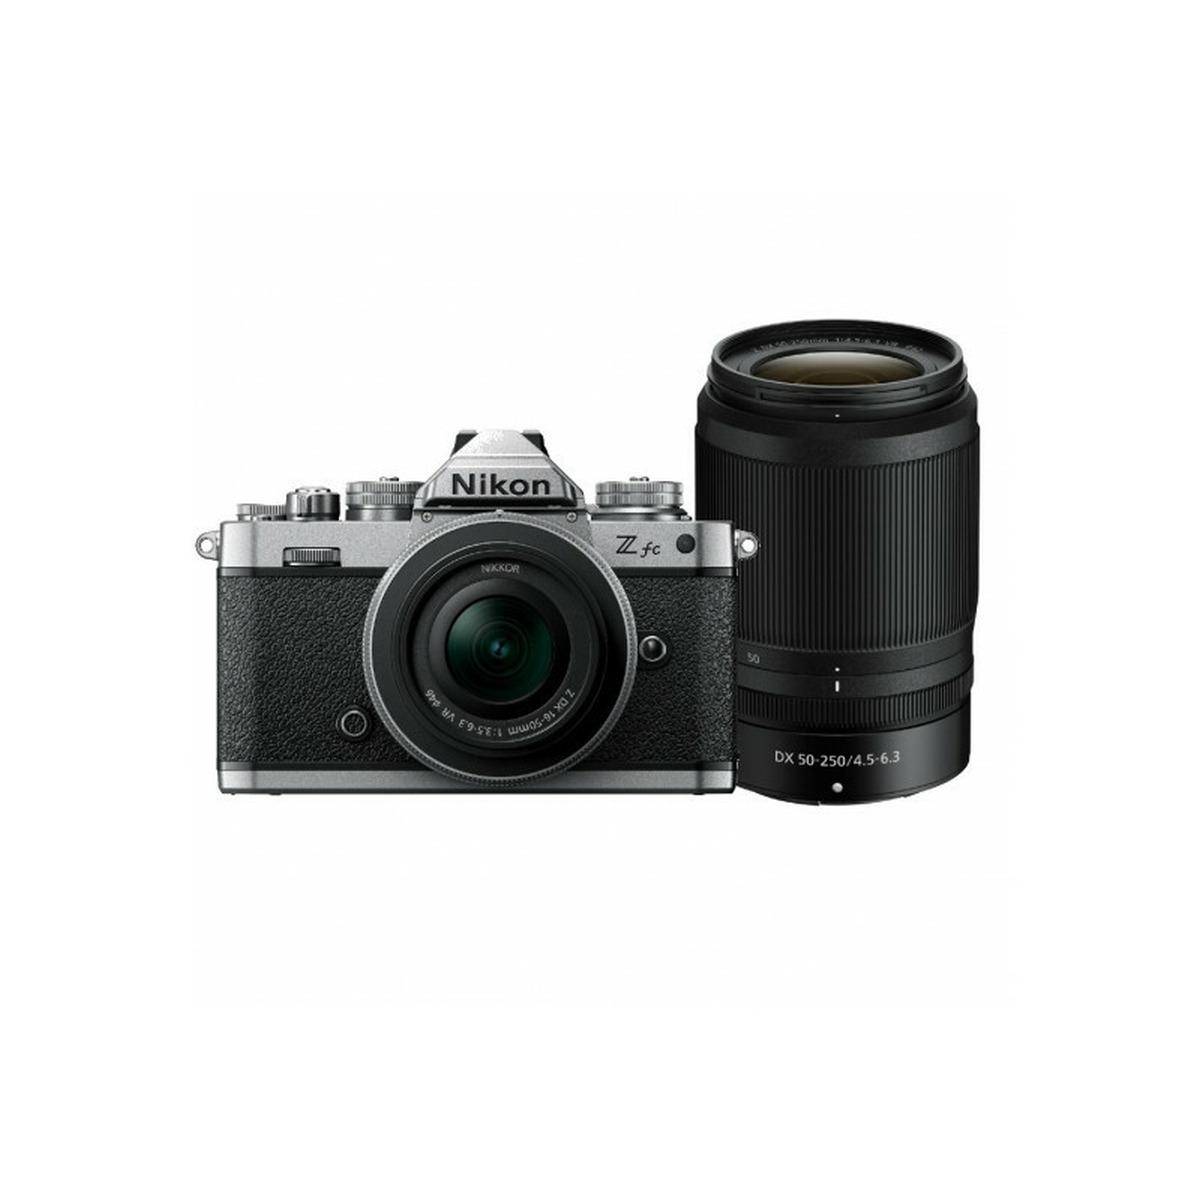 Nikon Z fc + Z DX 16-50mm VR Silver + Z DX 50-250 VR + SD 64GB 667 Pro Fotocamera mirrorless Aps-c - Garanzia ufficiale NITAL 4 anni